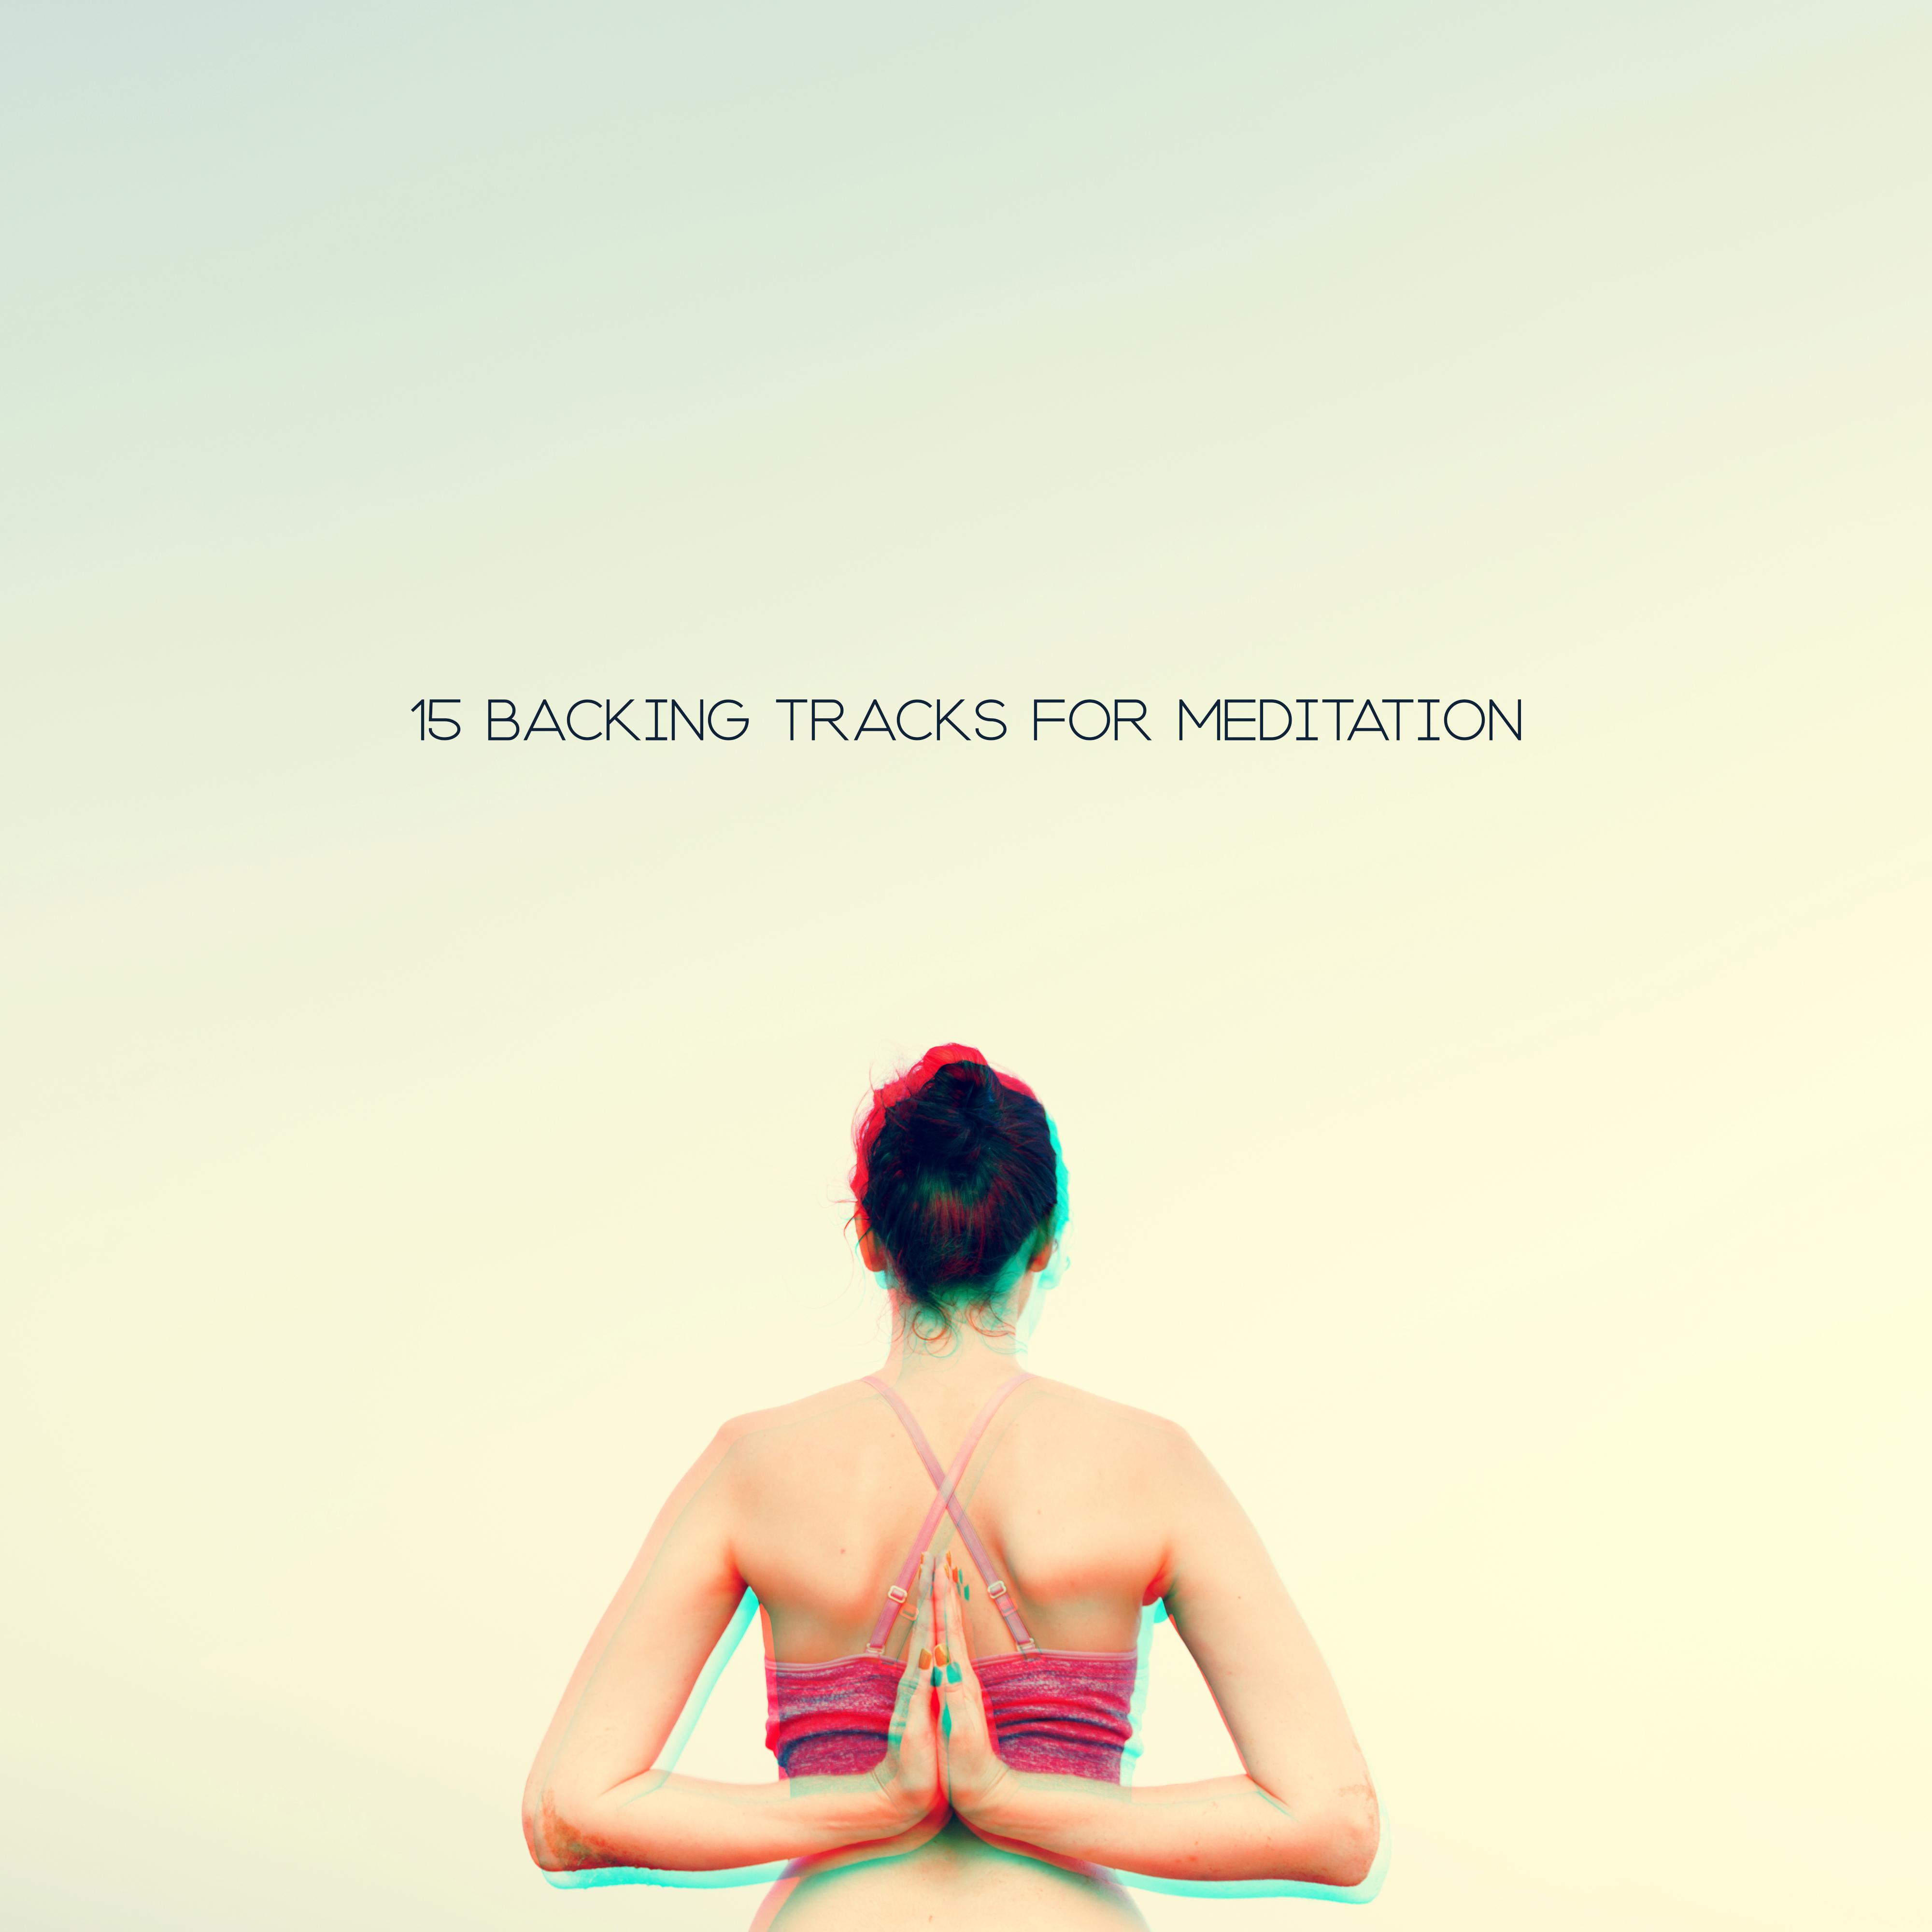 15 Backing Tracks for Meditation